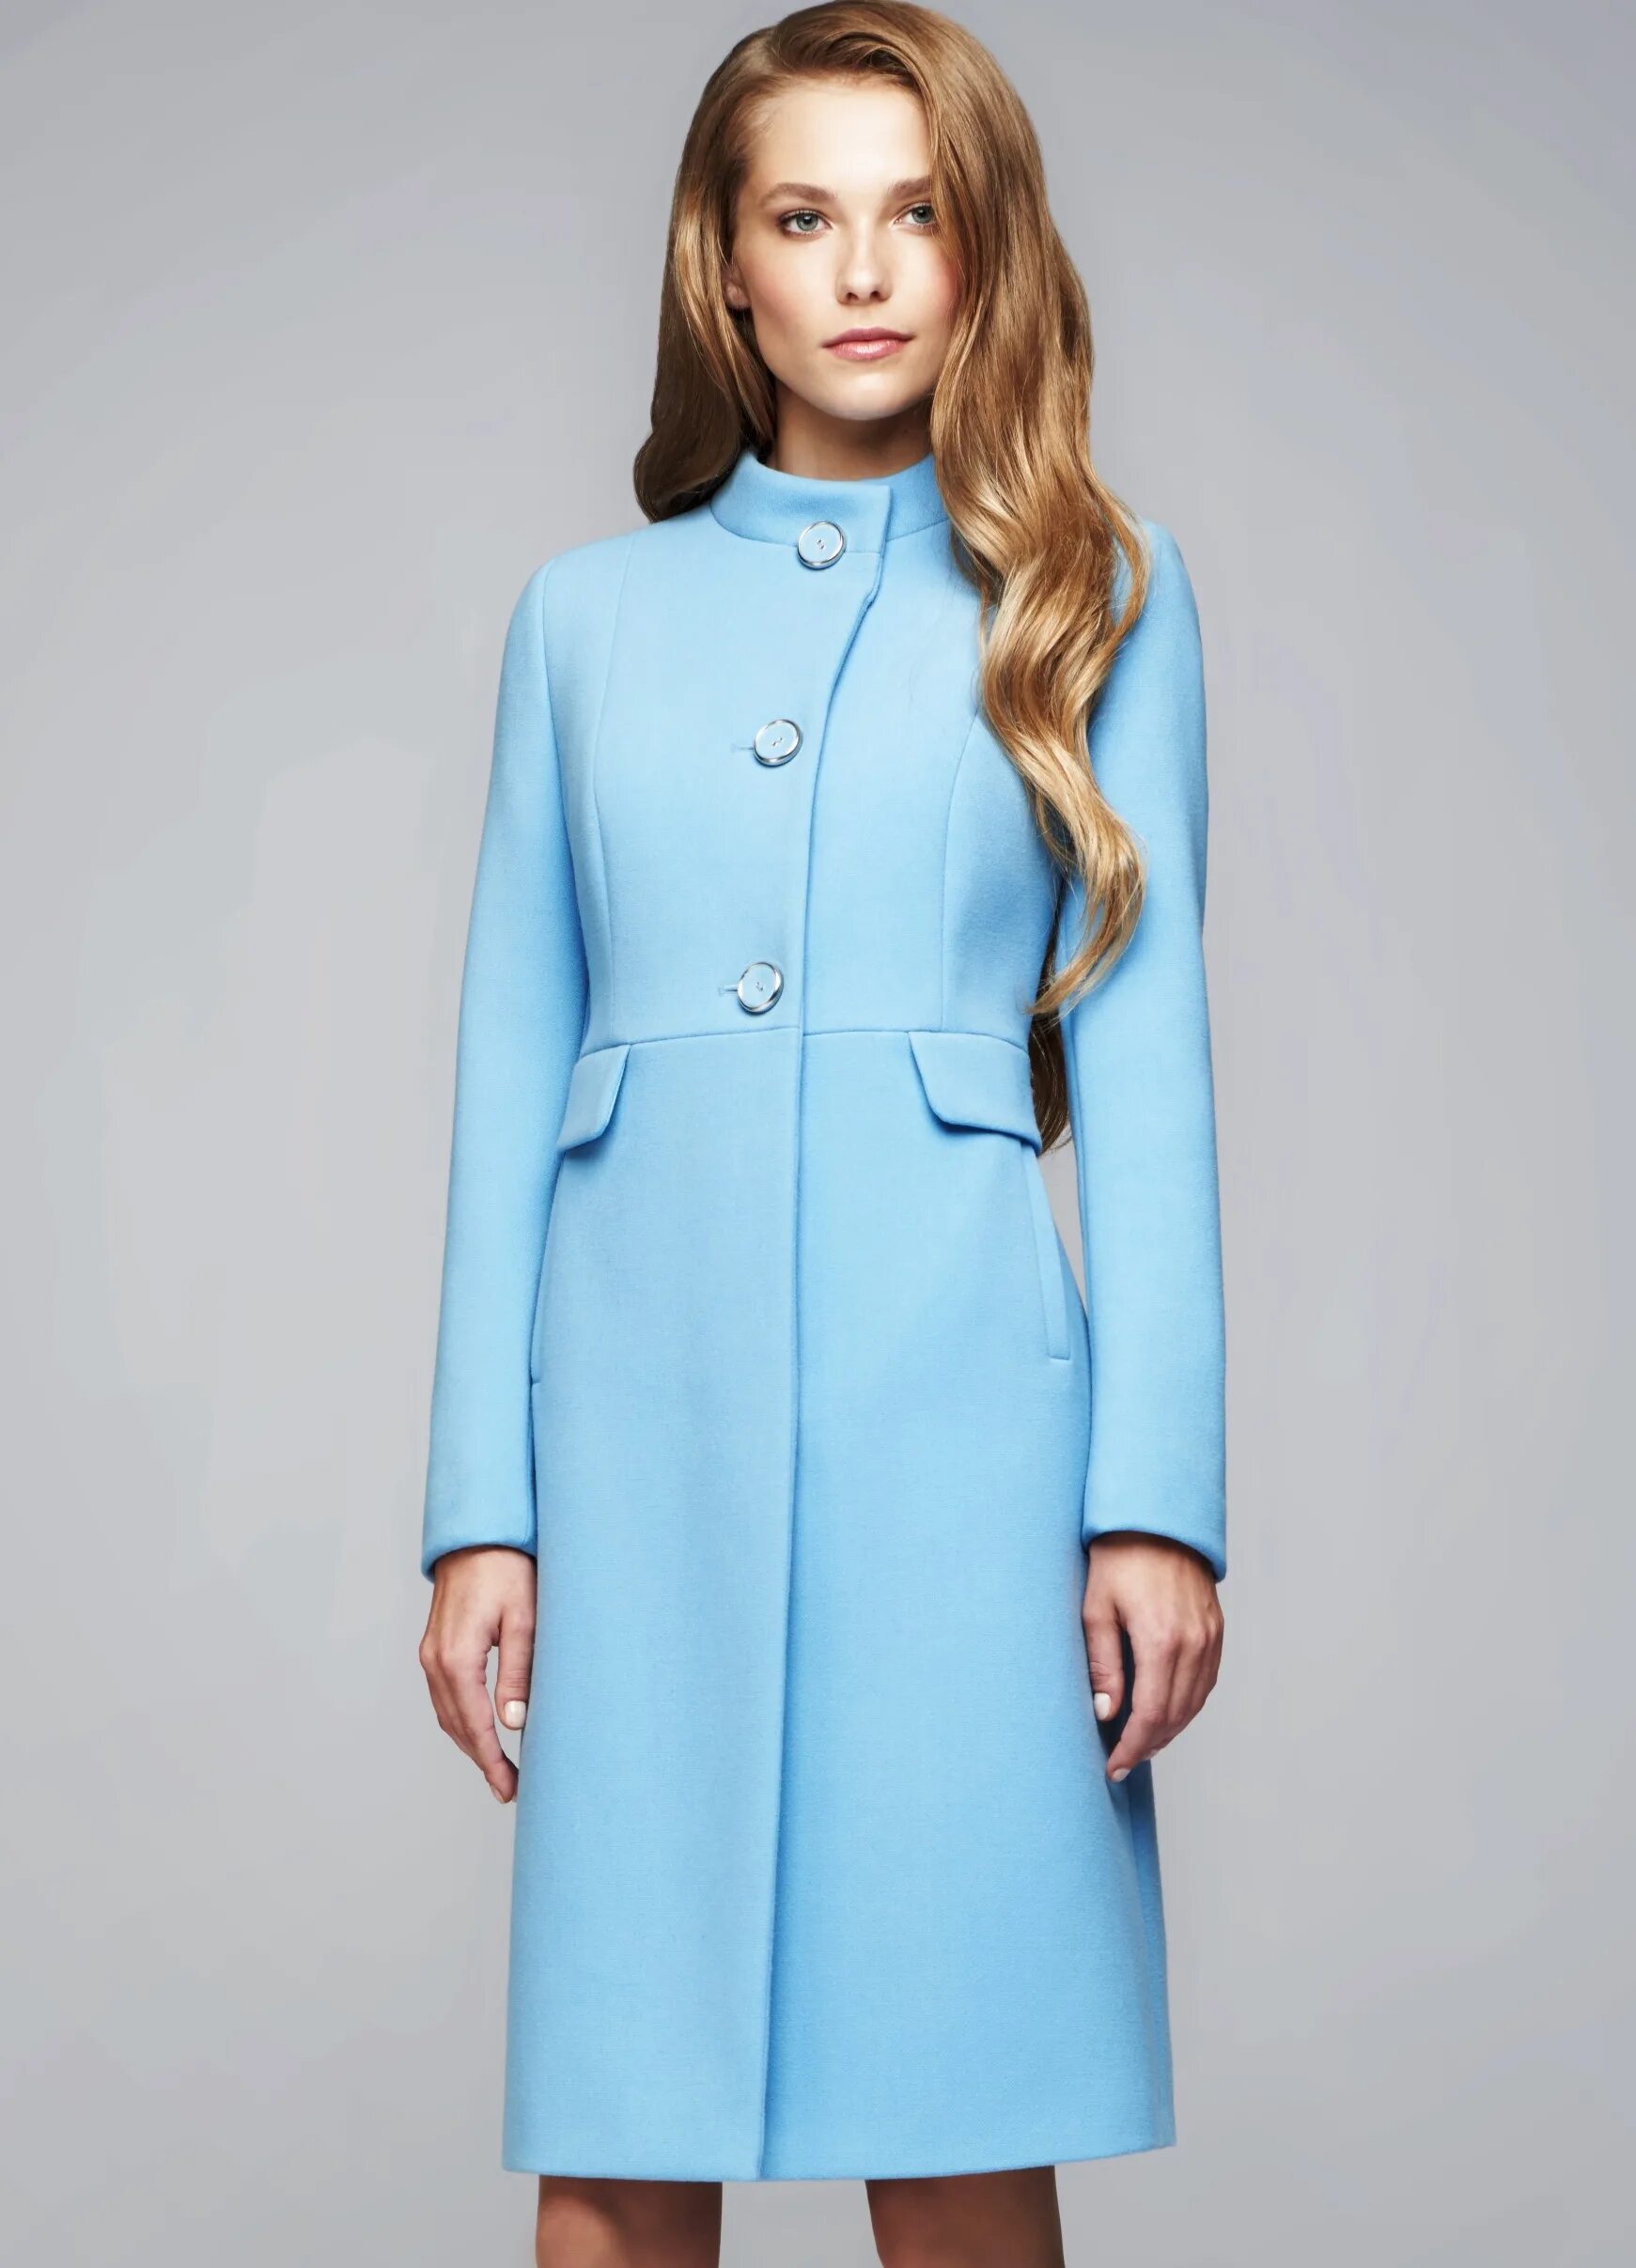 Одежда элема каталог. Пальто Элема модель 1-9033-1. Элема пальто женское. Элема белорусская одежда. Пальто Elema 1-8222-1.